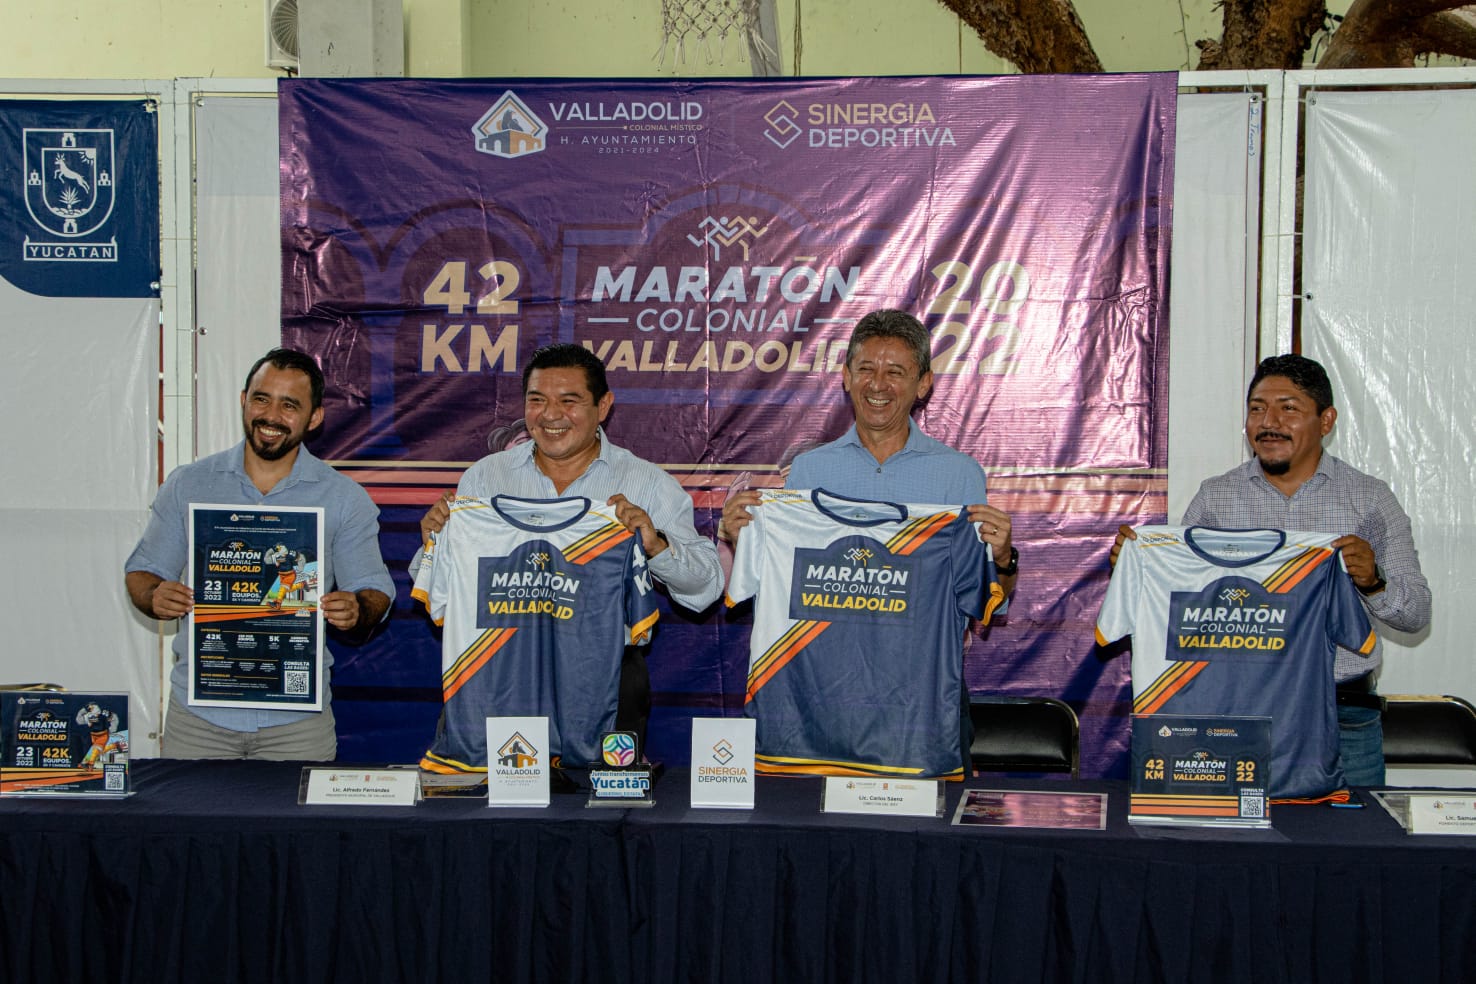 continua la promoción del primer maratón Colonial Valladolid